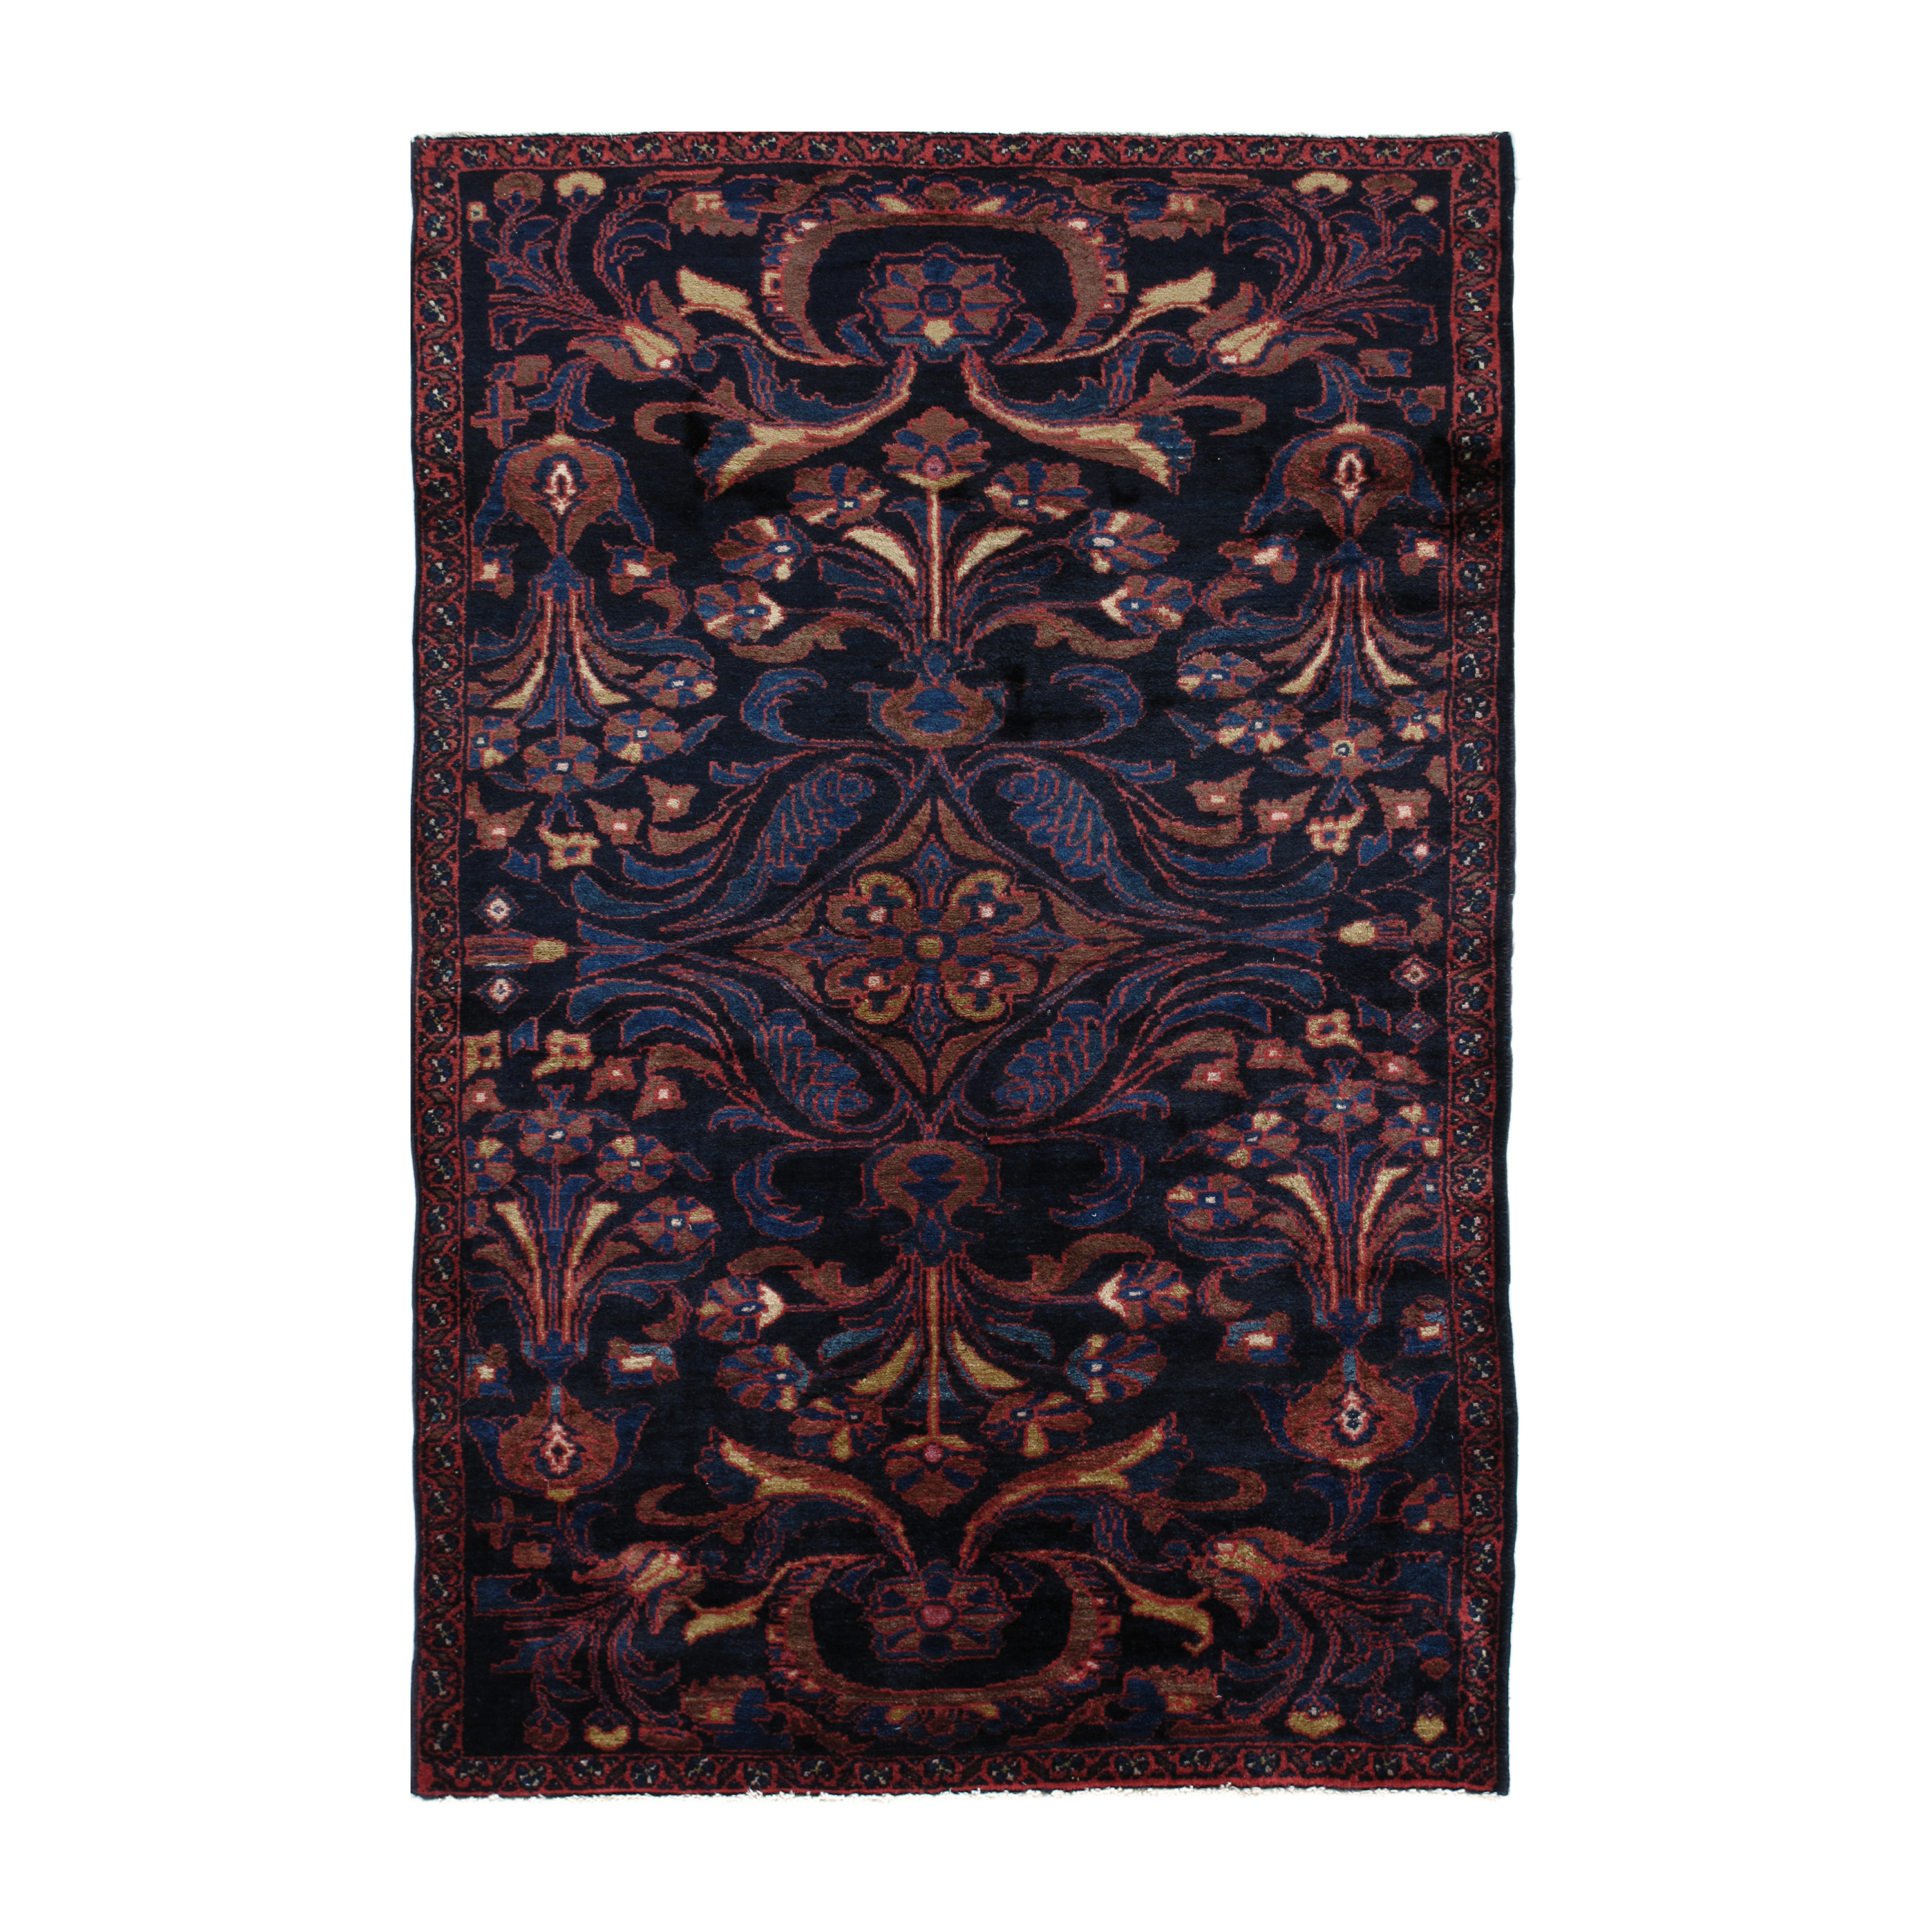 This Persian Bakhtiari rug